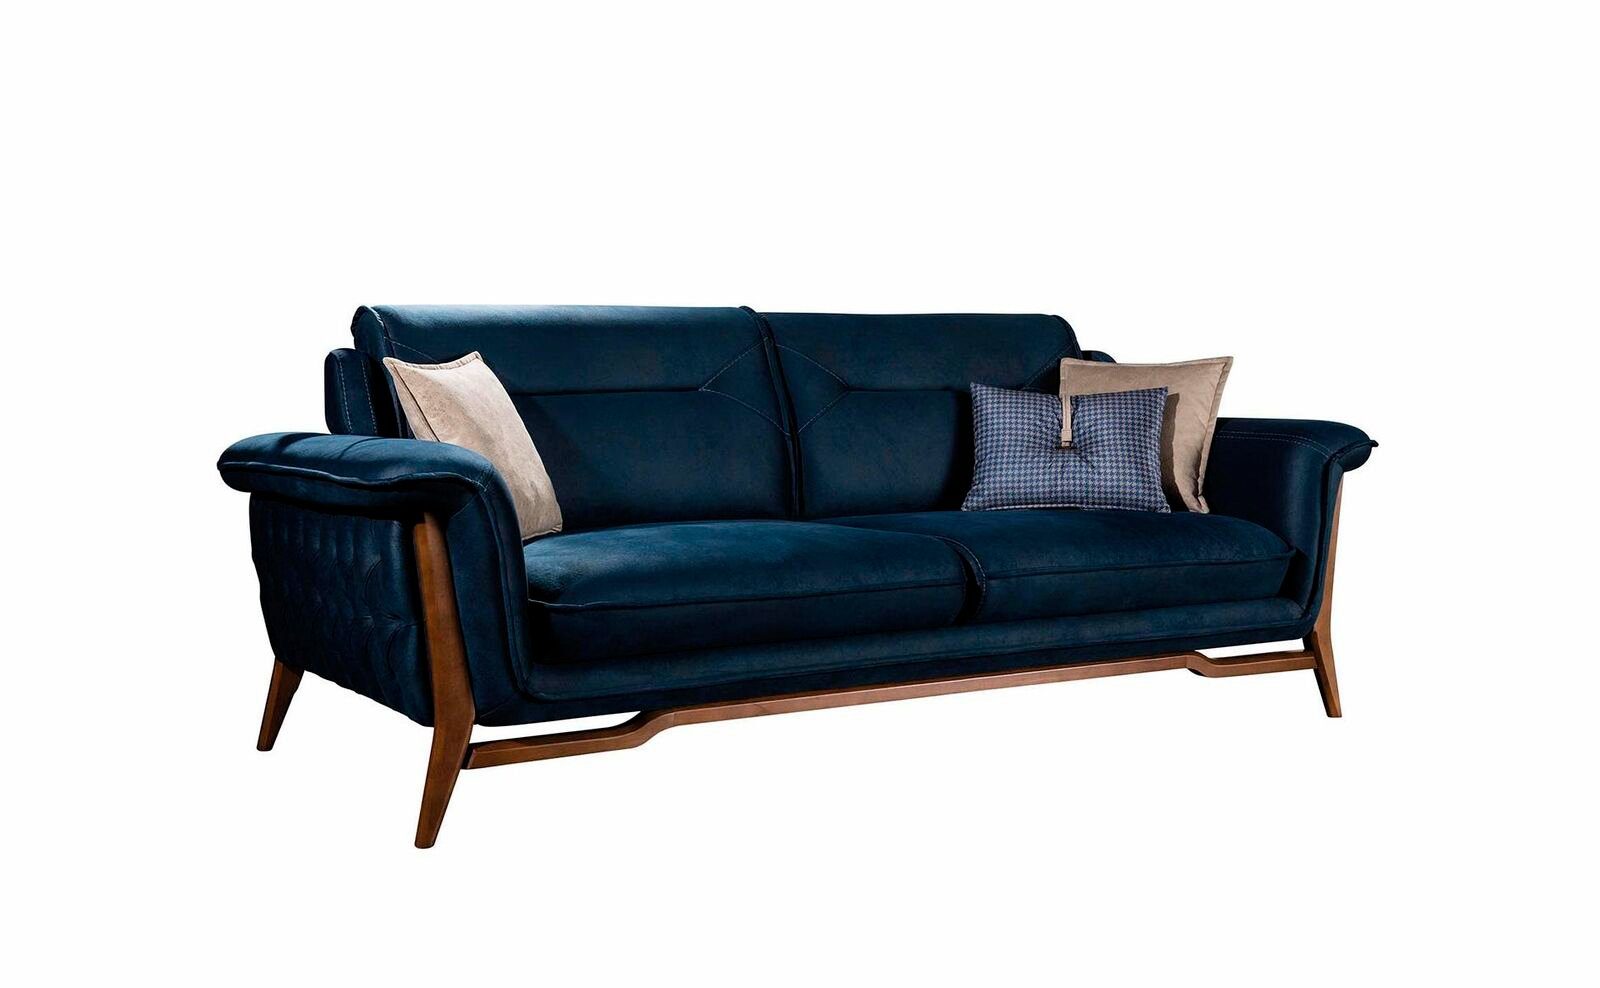 JVmoebel Sofa Blaues Sofa Wohnzimmercouch 1 Europe Luxus Teile, Dreisitzer Textil Edler Stil, Sitzer in Made